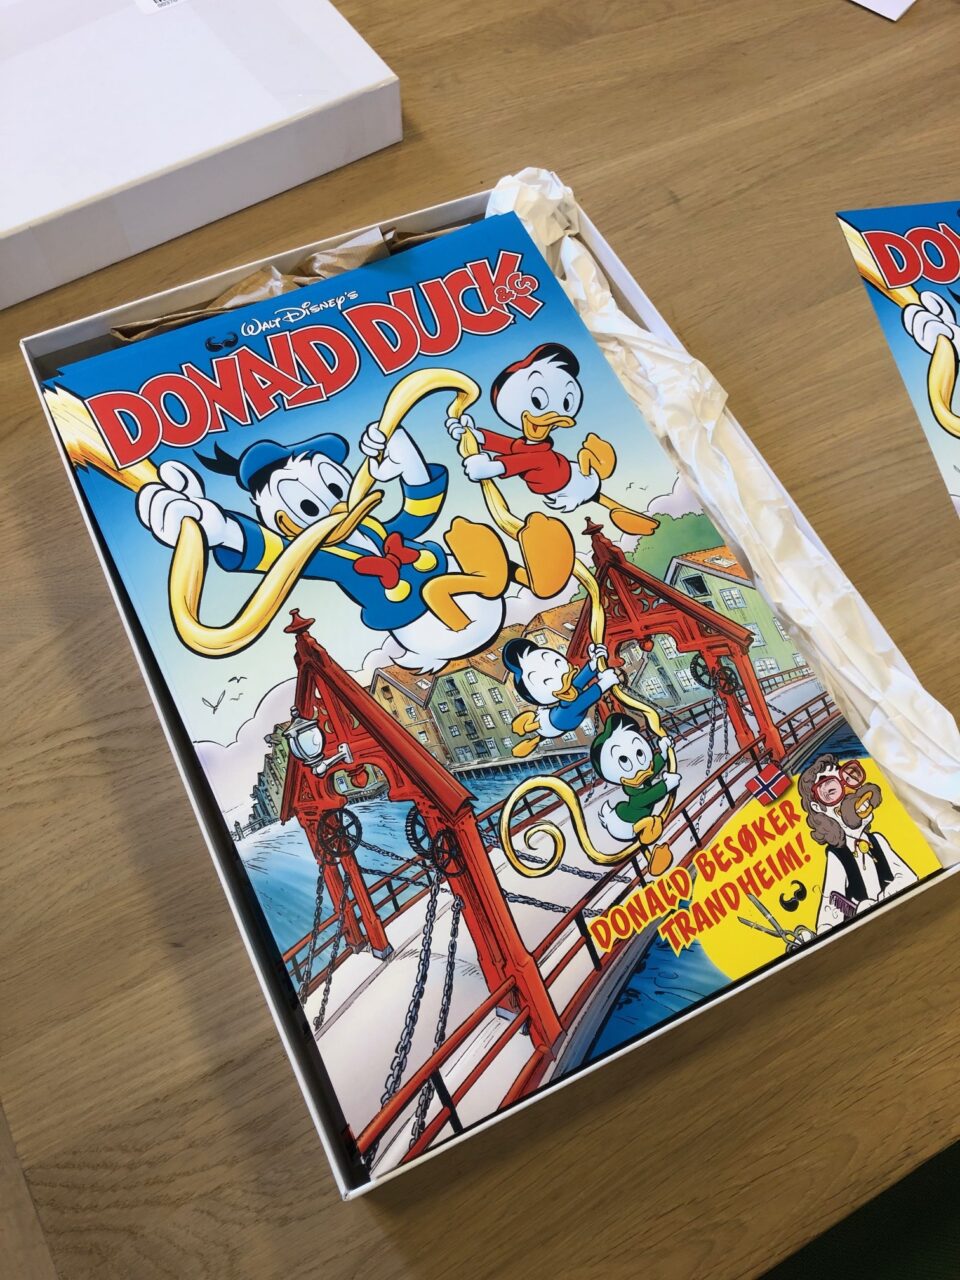 En kake med Donald Duck-tema med levende tegneserier, med Donald og andre karakterer, på et trebord.